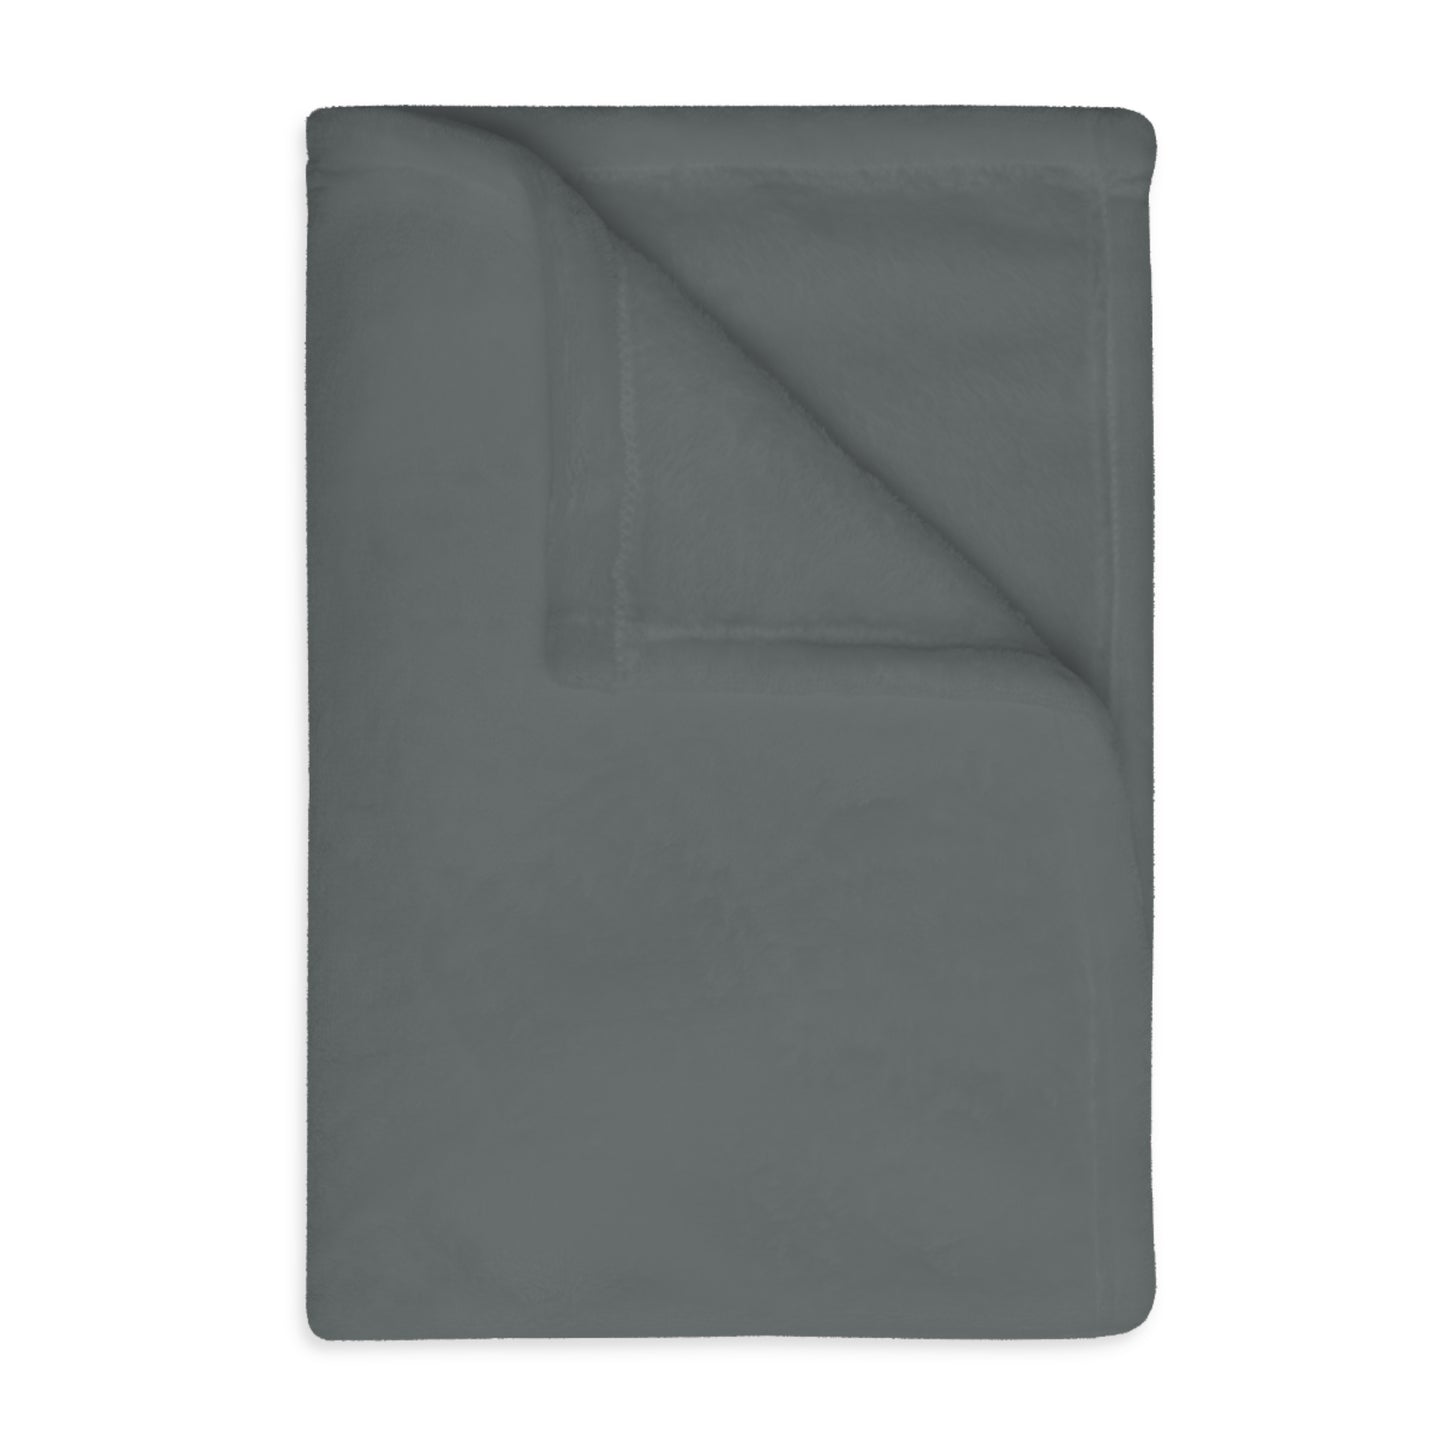 Velveteen Minky Blanket (Two-sided print): Dance Dark Grey